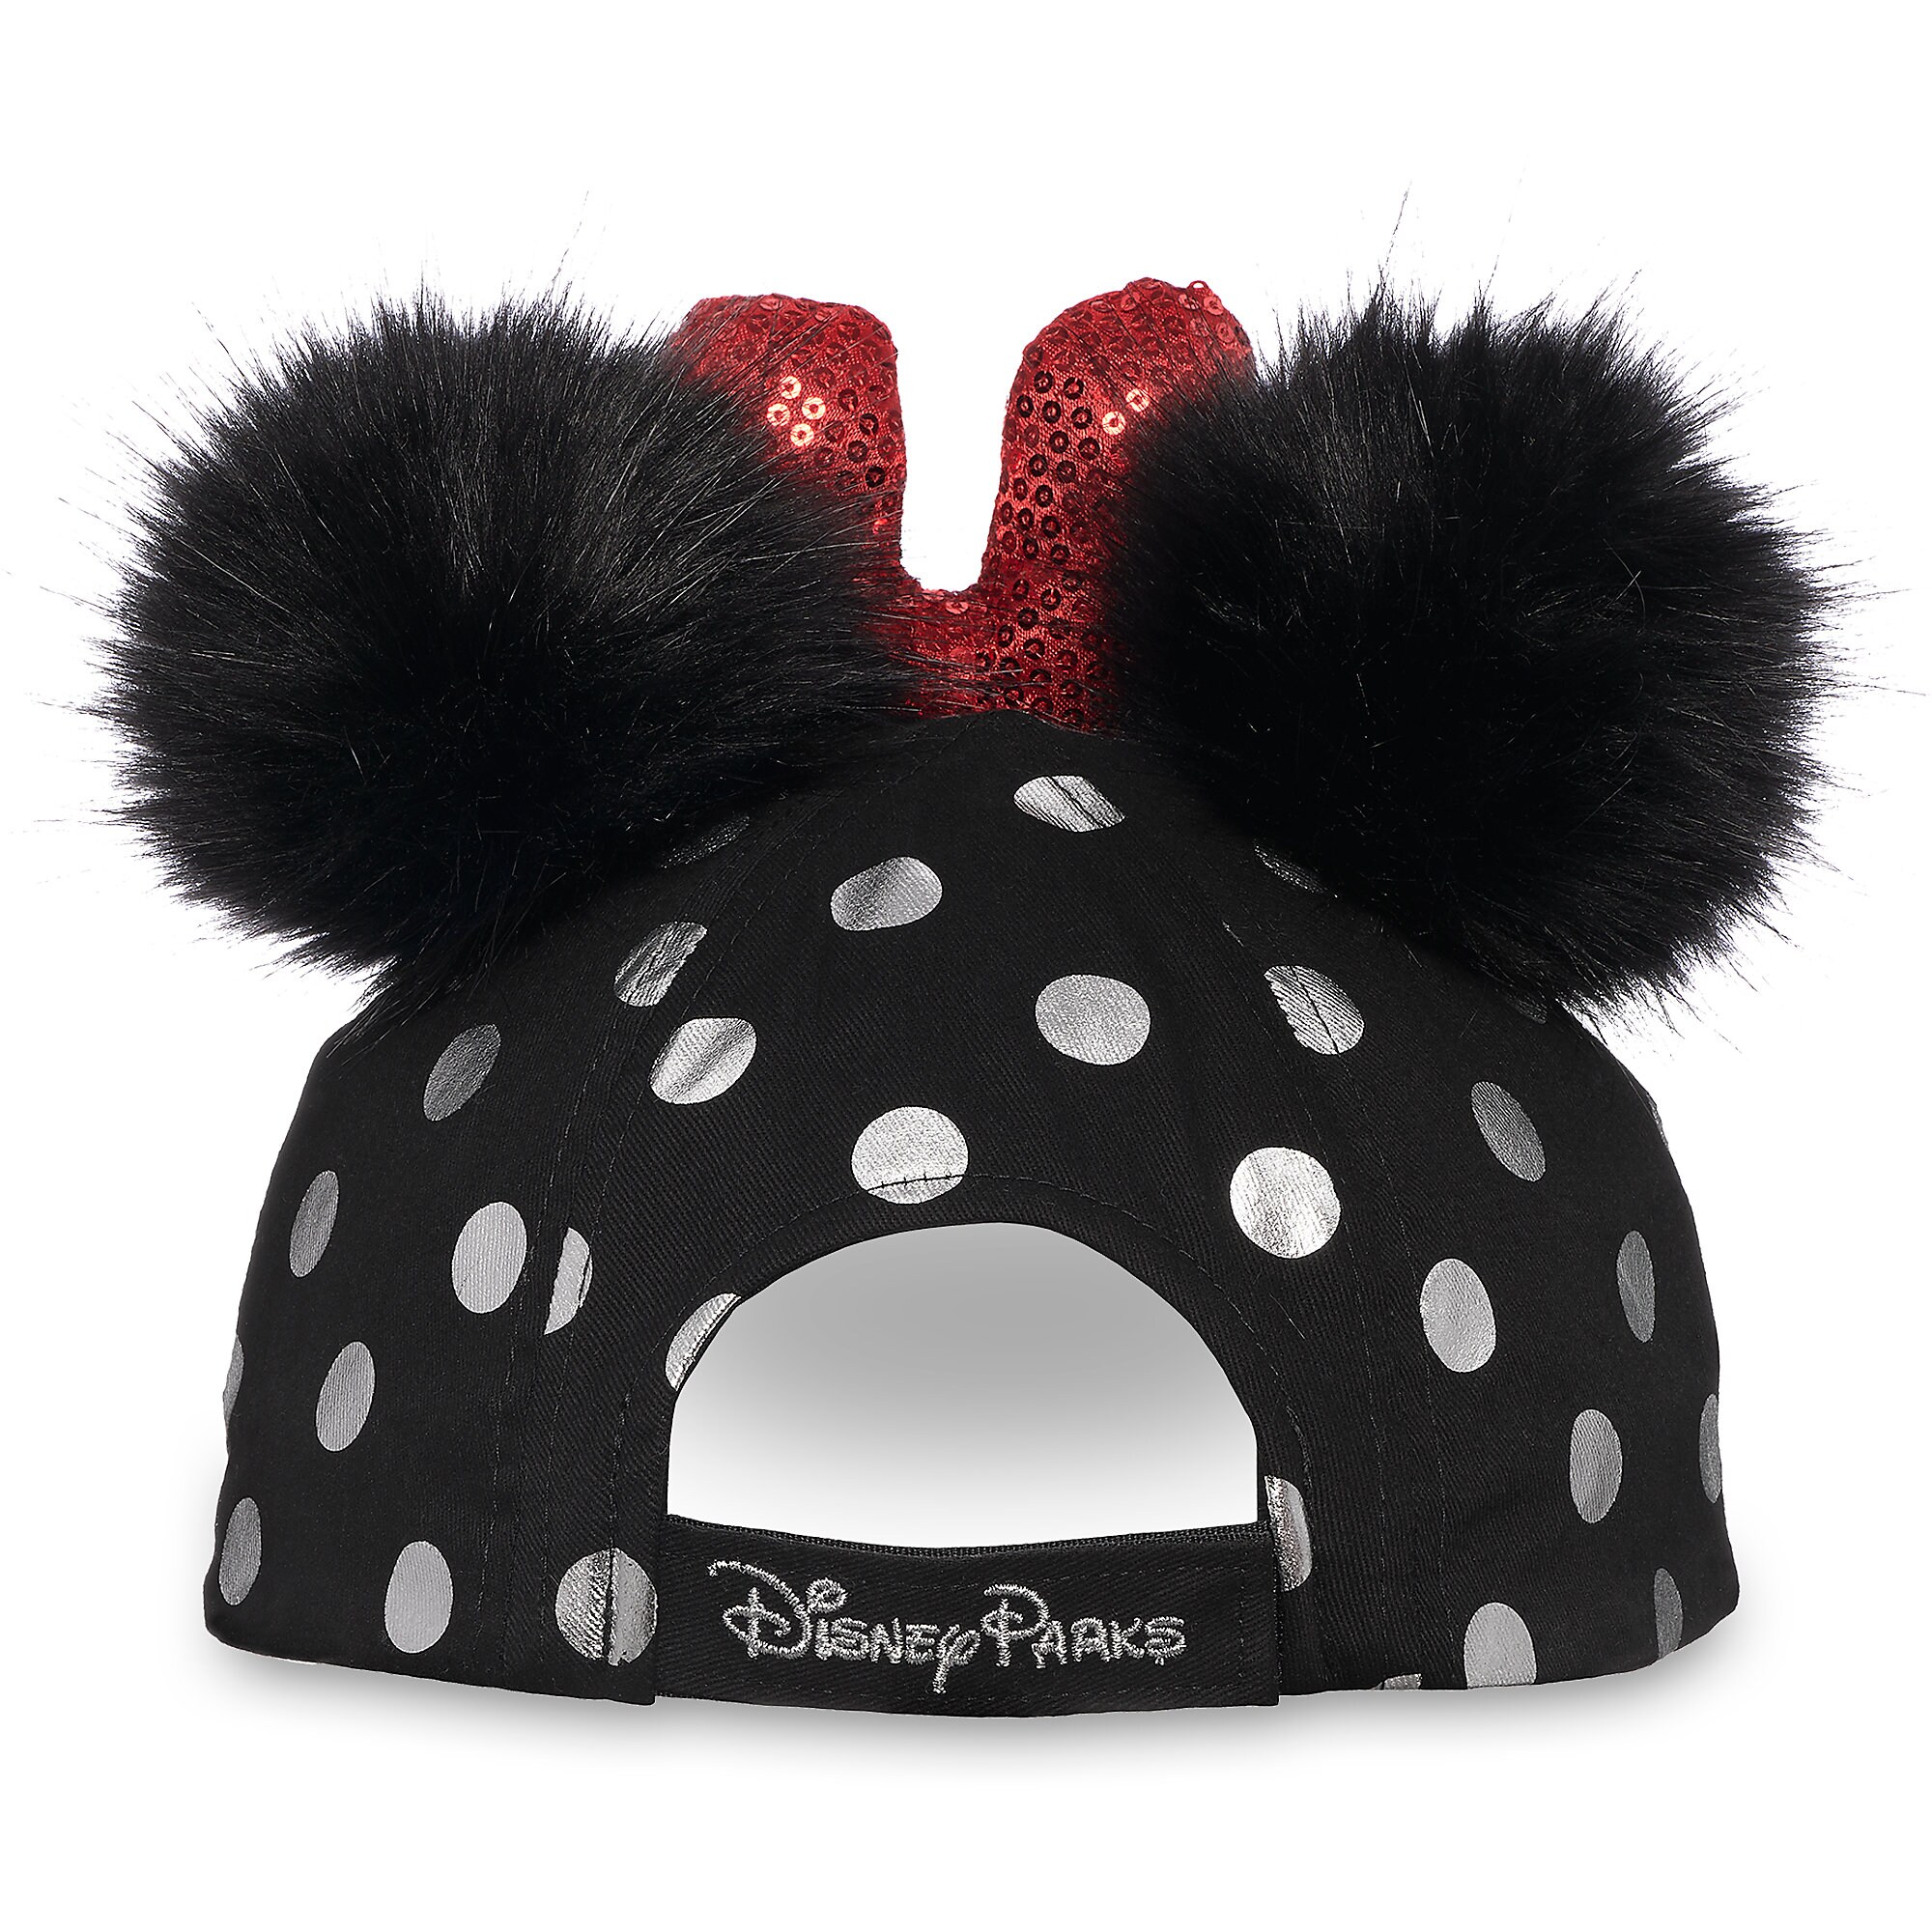 Minnie Mouse Polka Dot Pom Pom Baseball Cap - Black